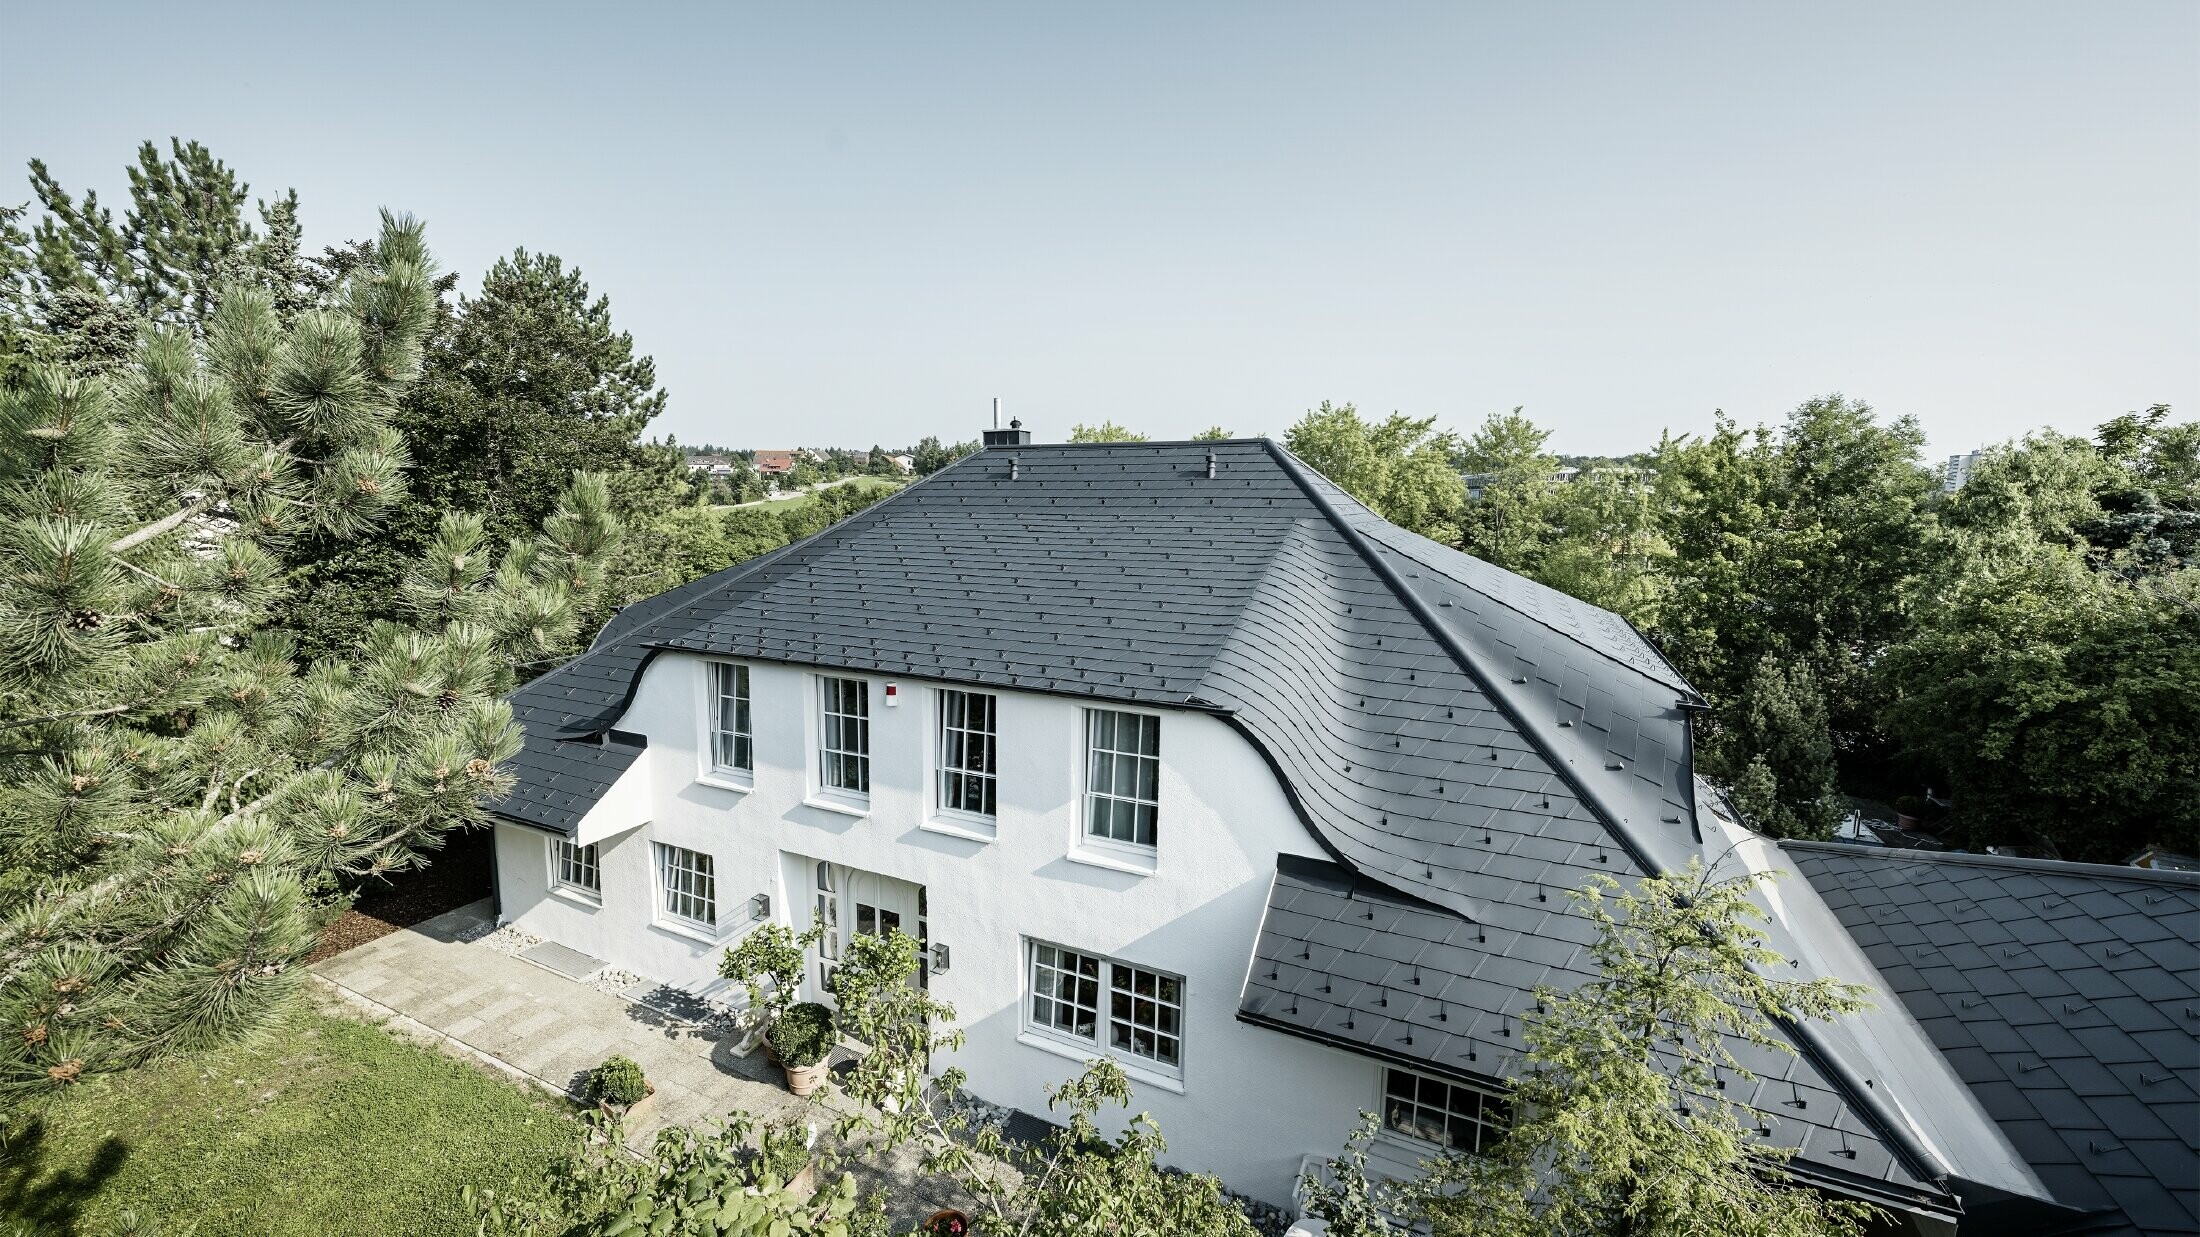 Dach czterospadowy z łukowatymi lukarnami, pokryty aluminiową dachówką łupkową DS.19 w kolorze antracytowym